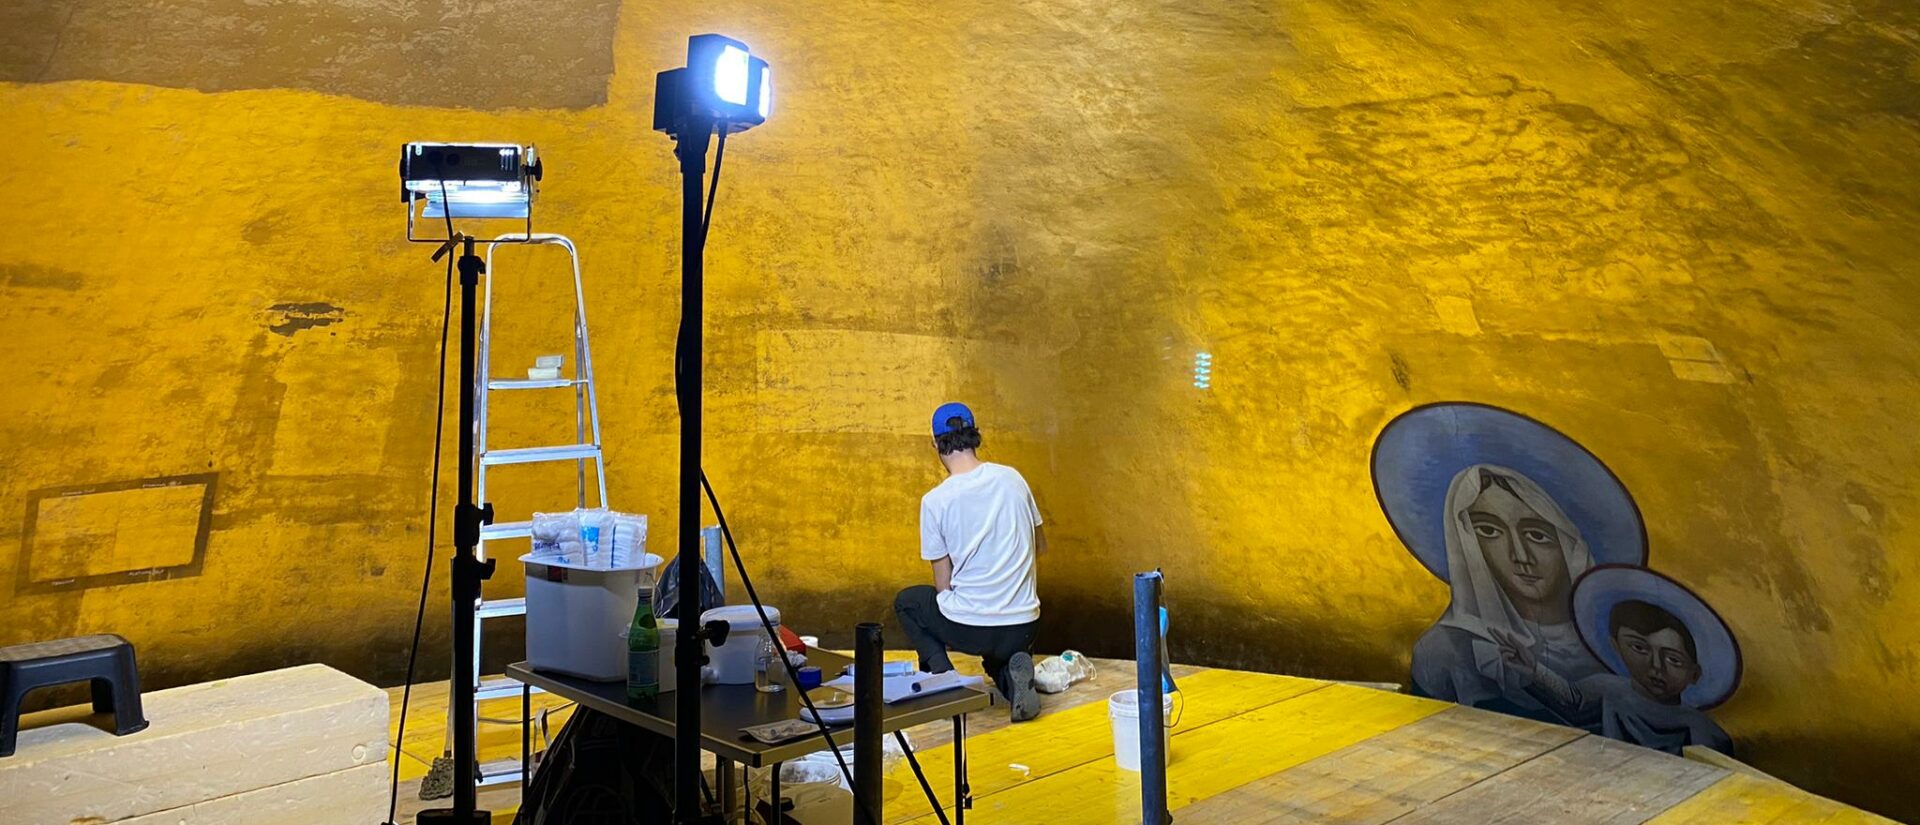 La restauration de la fresque de Gino Severini a commencé | © CONSORTIUM OLIVIER GUYOT JULIAN JAMES